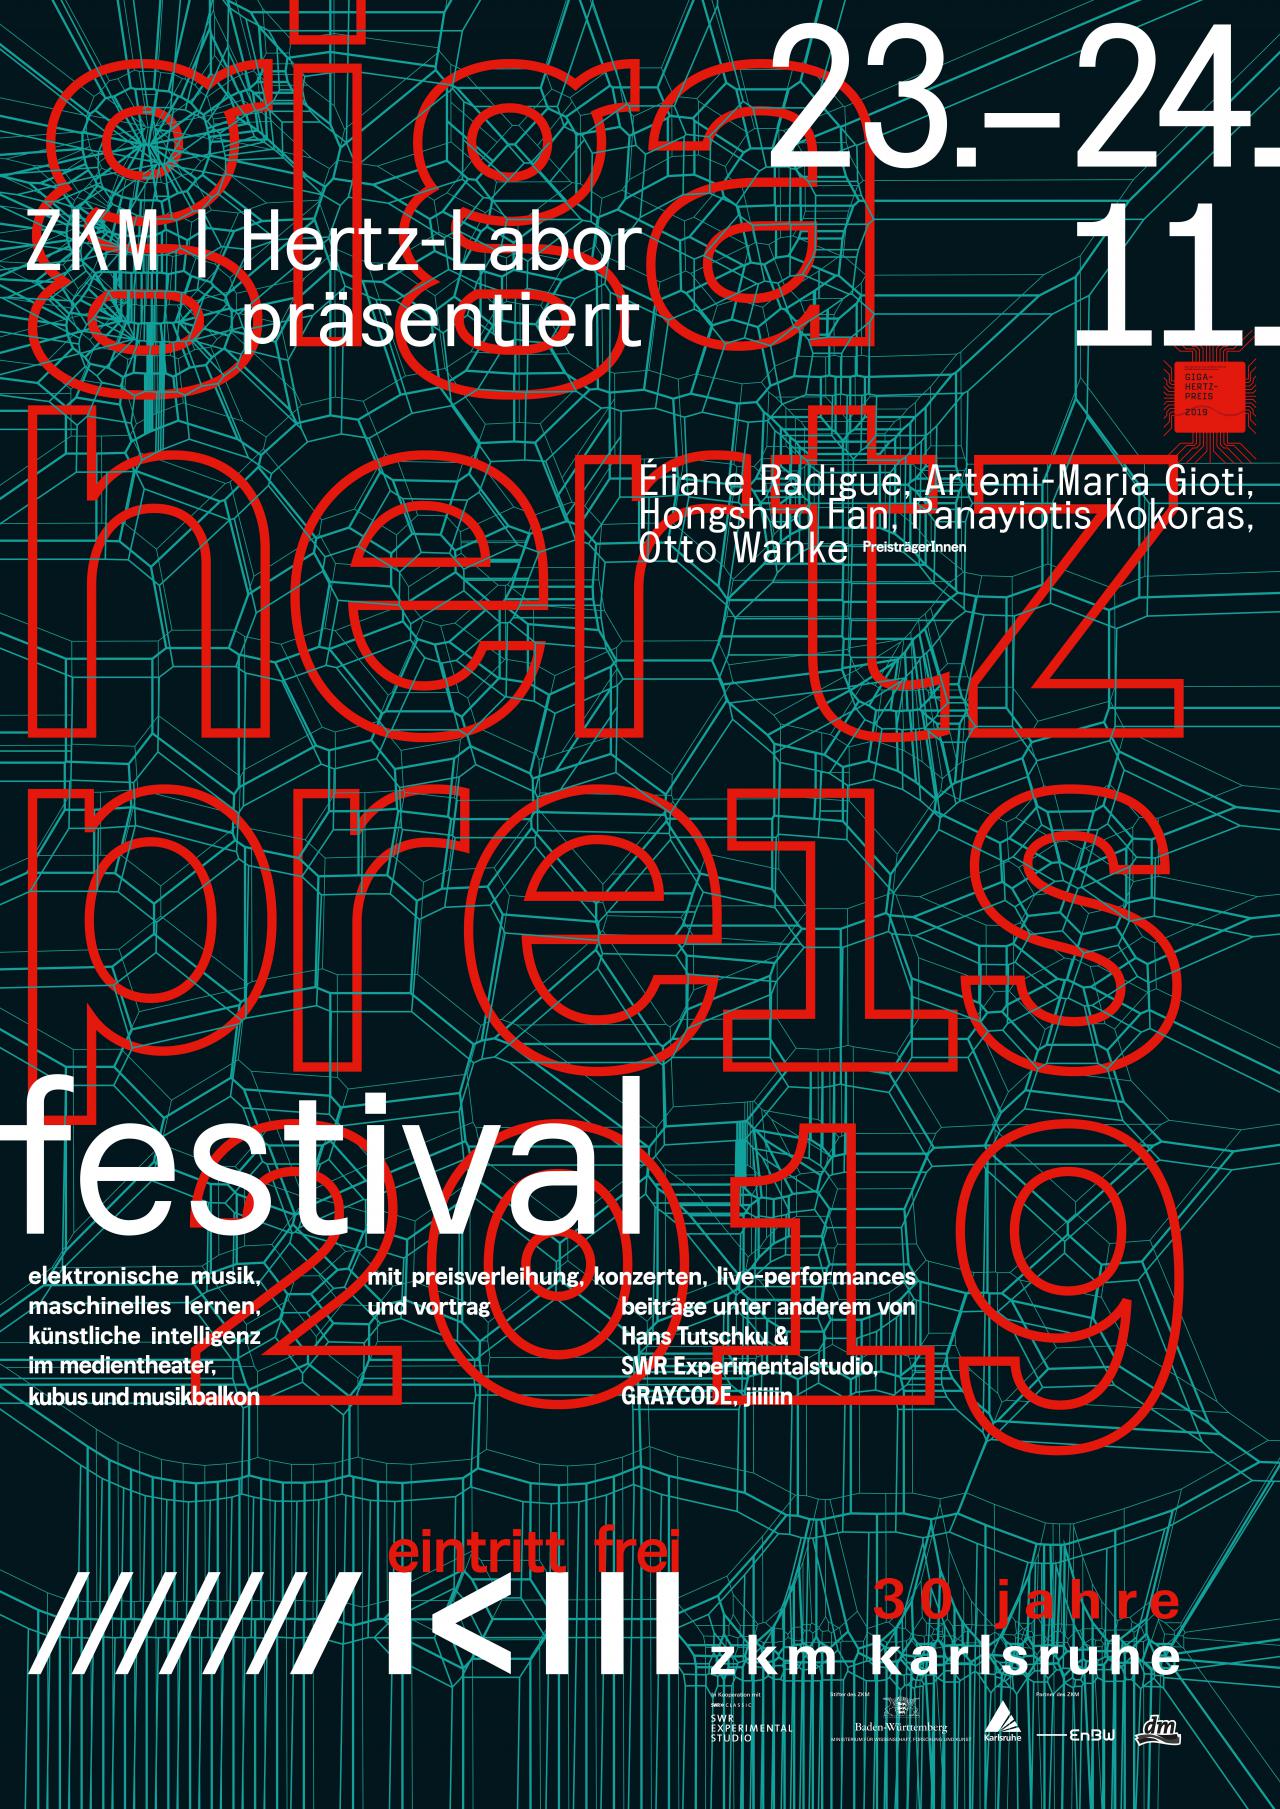 Poster Giga-Hertz Award 2019 at ZKM | Karlsruhe